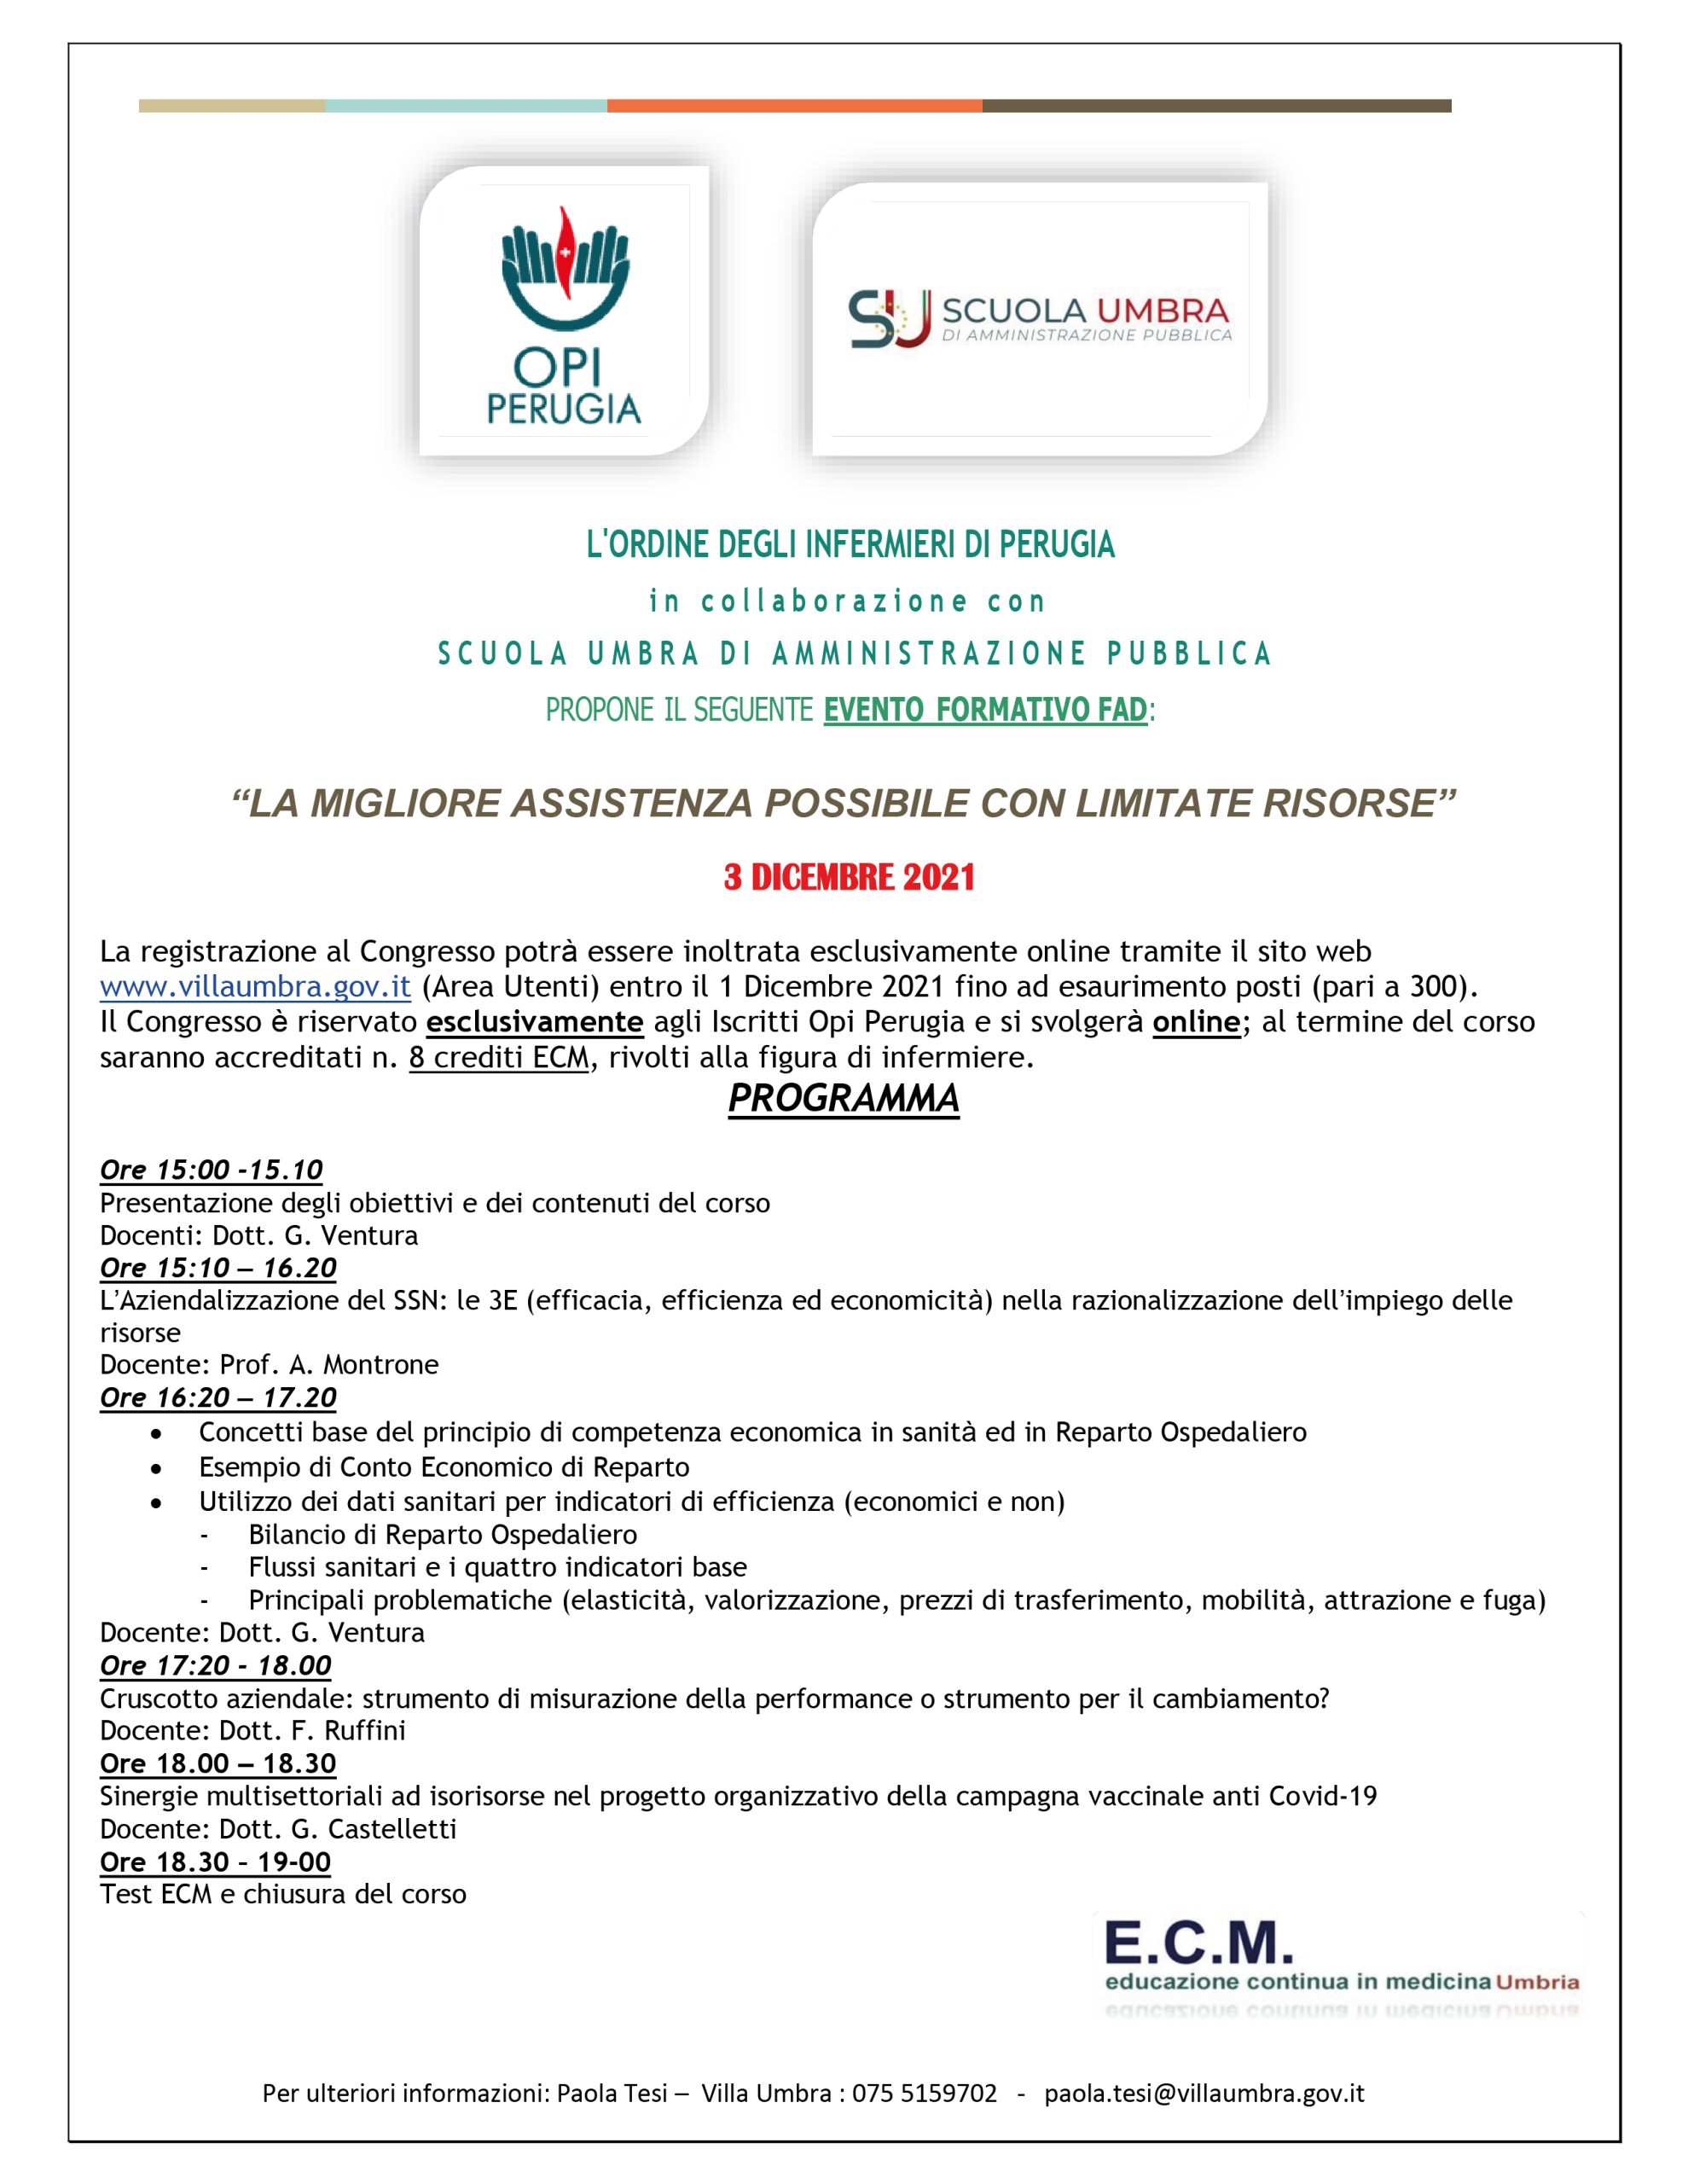 OPI Perugia - Evento La migliore assistenza possibile con limitate risorse